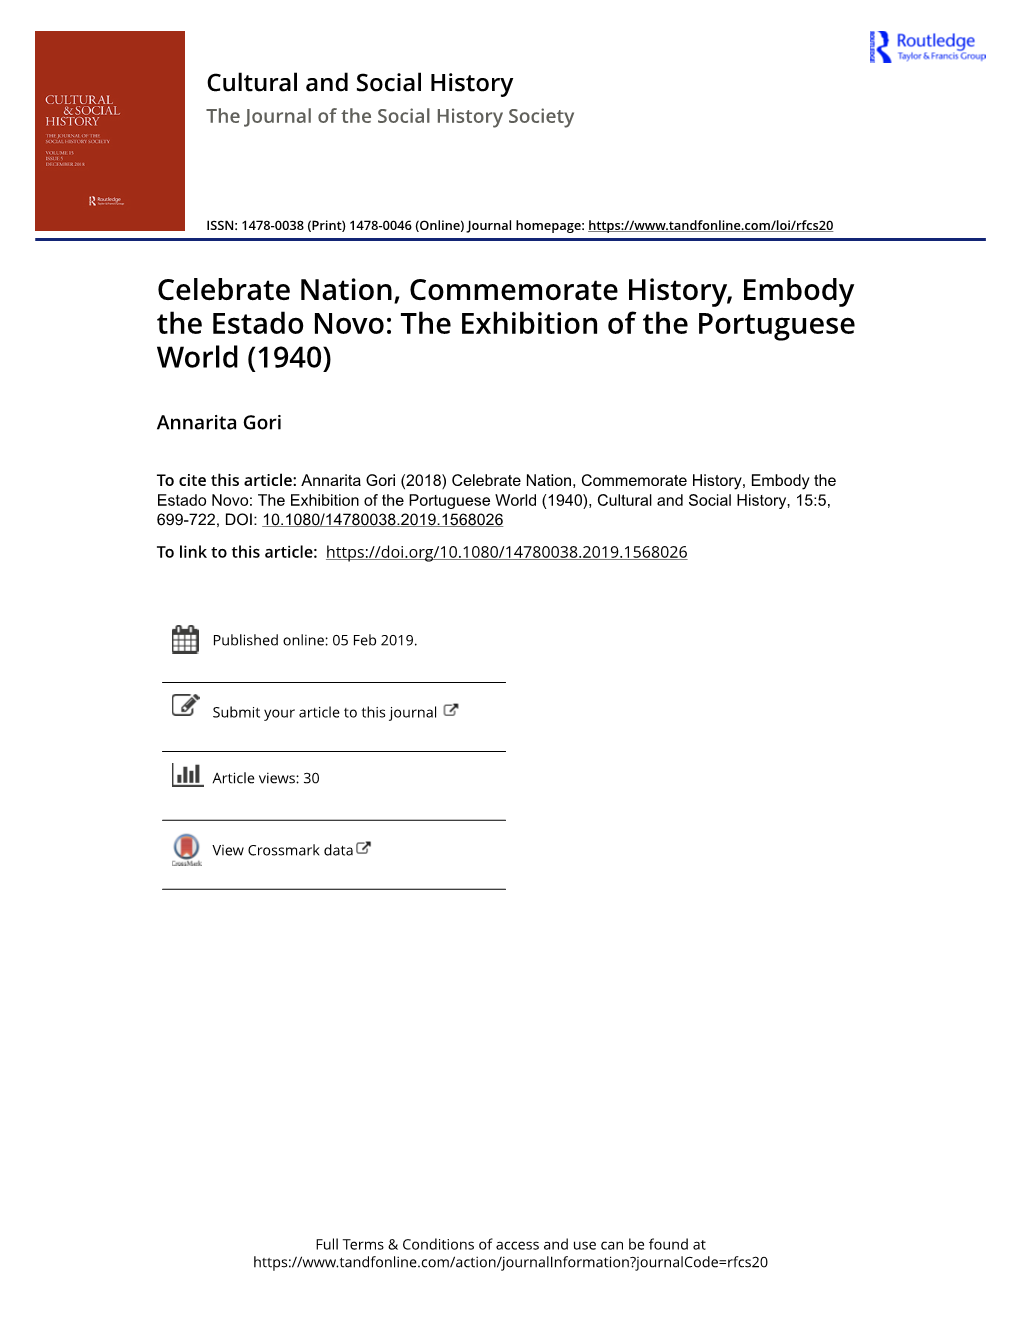 Celebrate Nation, Commemorate History, Embody the Estado Novo: the Exhibition of the Portuguese World (1940)